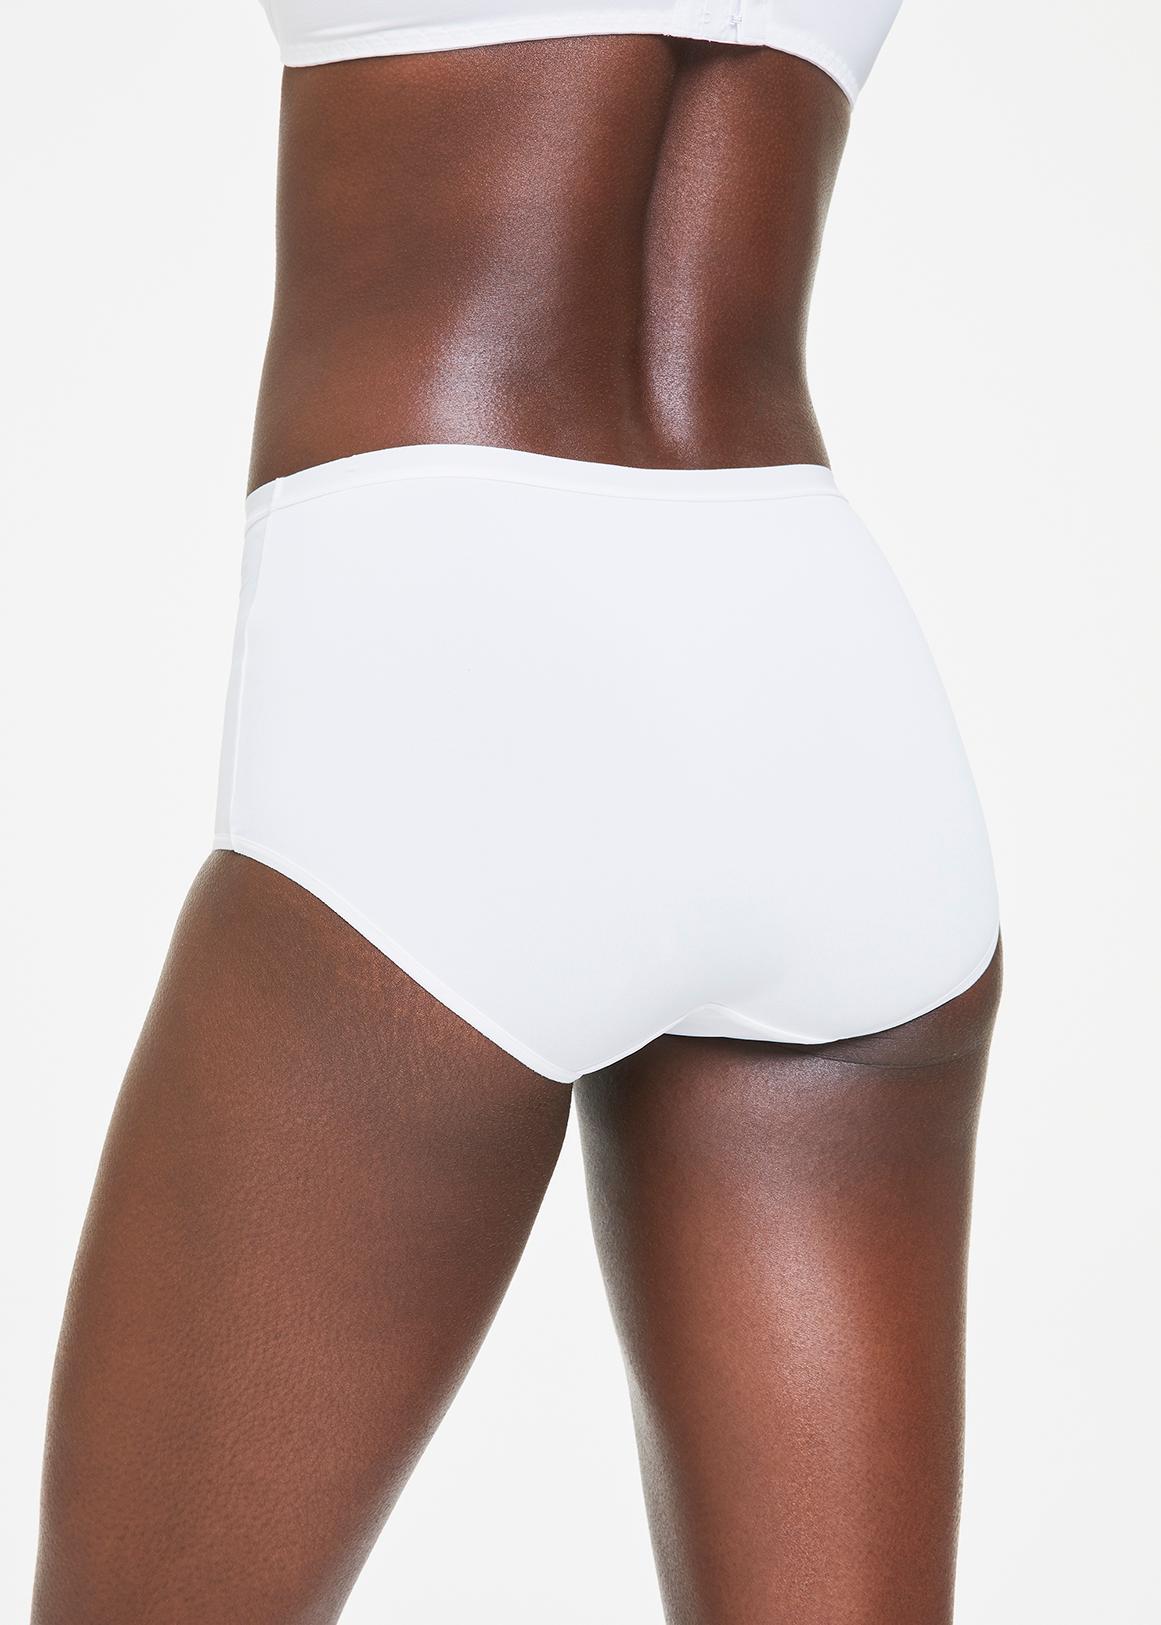 Mrat Seamless Underwear High Waisted Soft Full Briefs Ladies Fresh